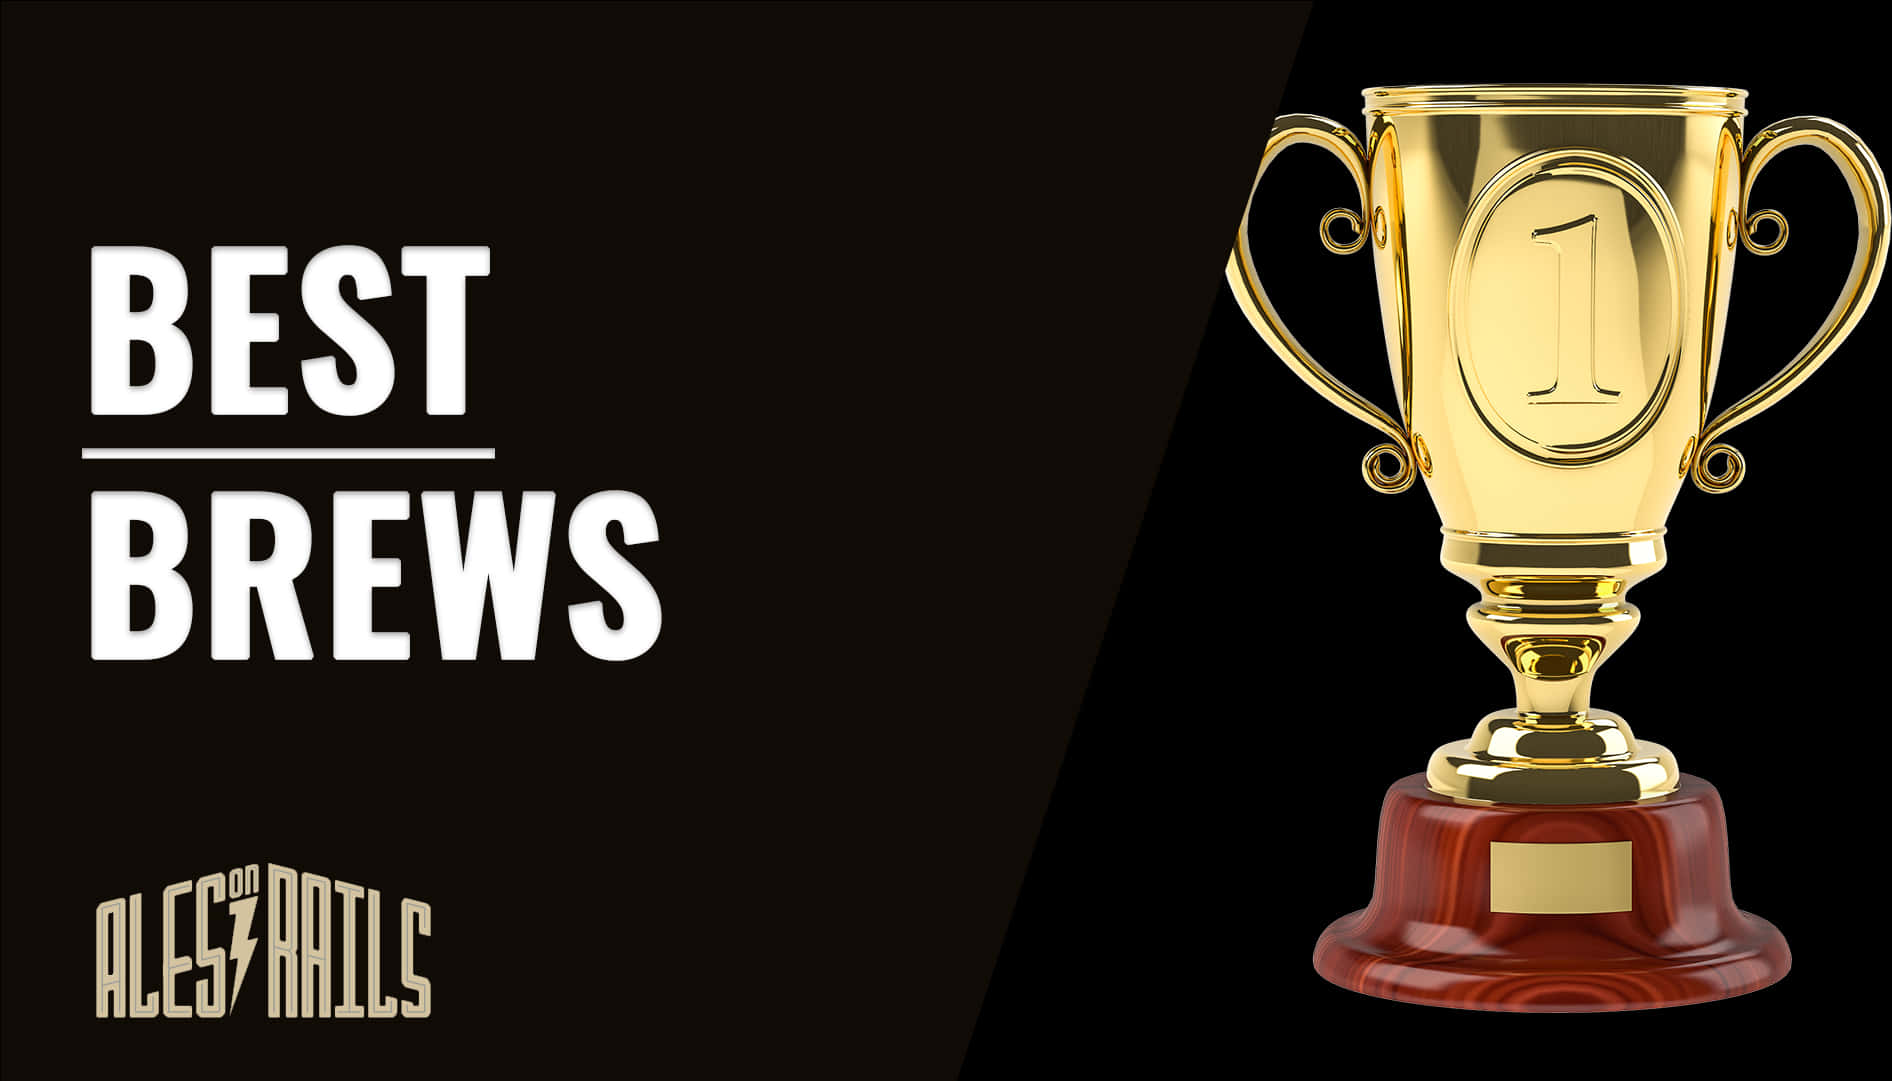 Best Brews Golden Trophy Award PNG